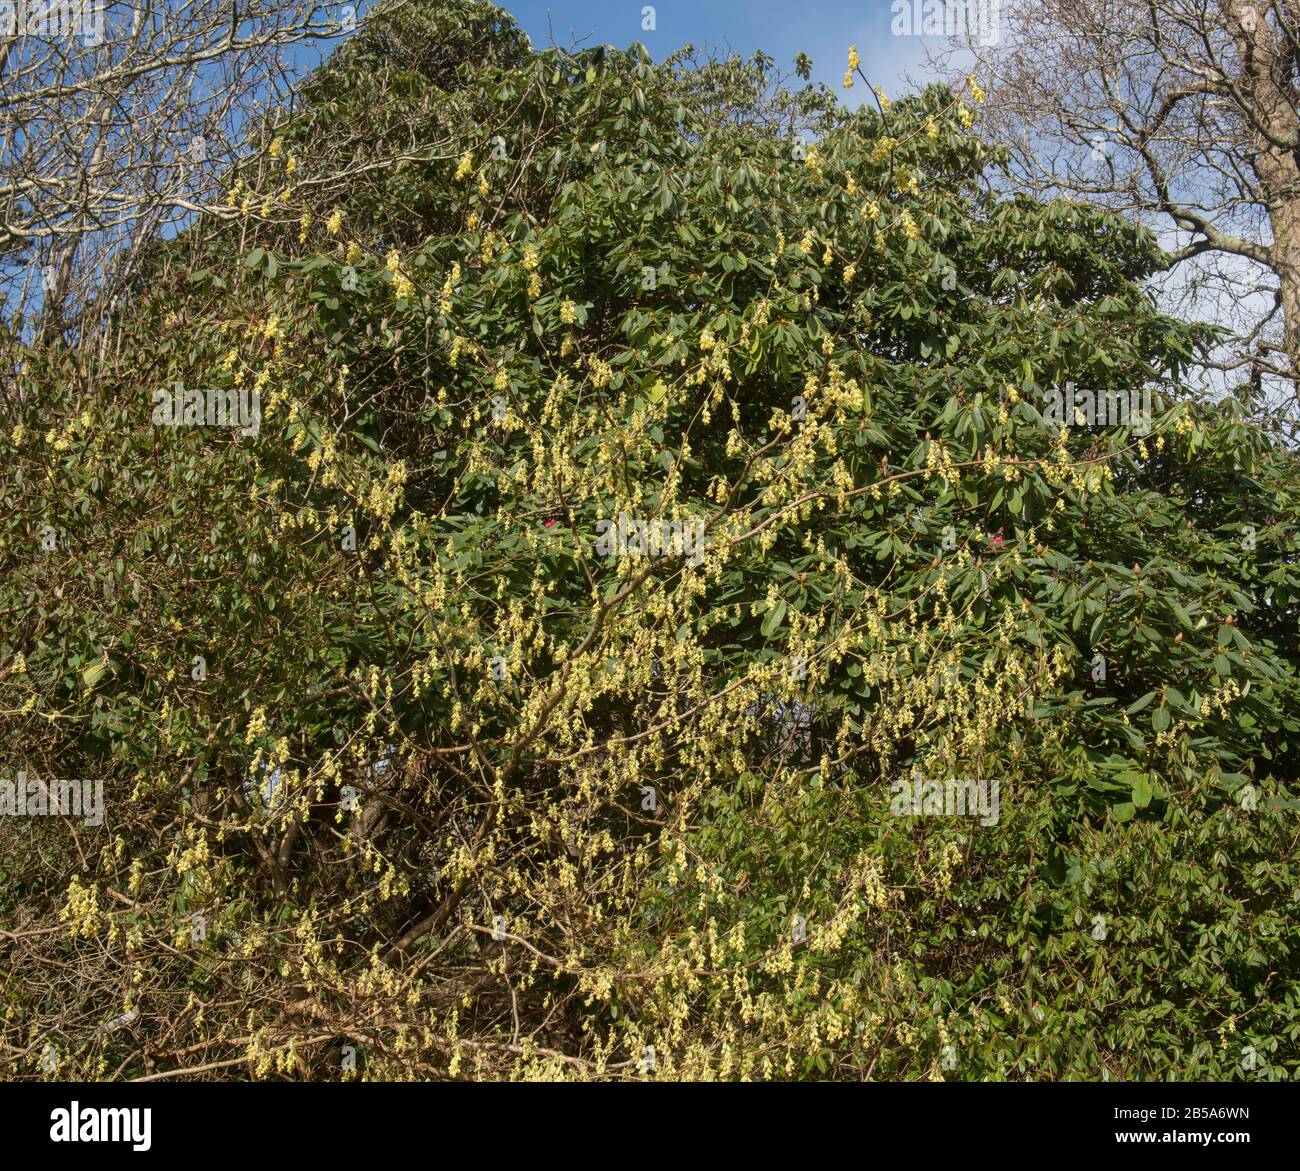 Arbuste À Feuilles Caduques (Corylopsis spicata), À Fleurs Printanières, Qui Pousse dans un jardin de forêt dans les Cornouailles rurales, Angleterre, Royaume-Uni Banque D'Images